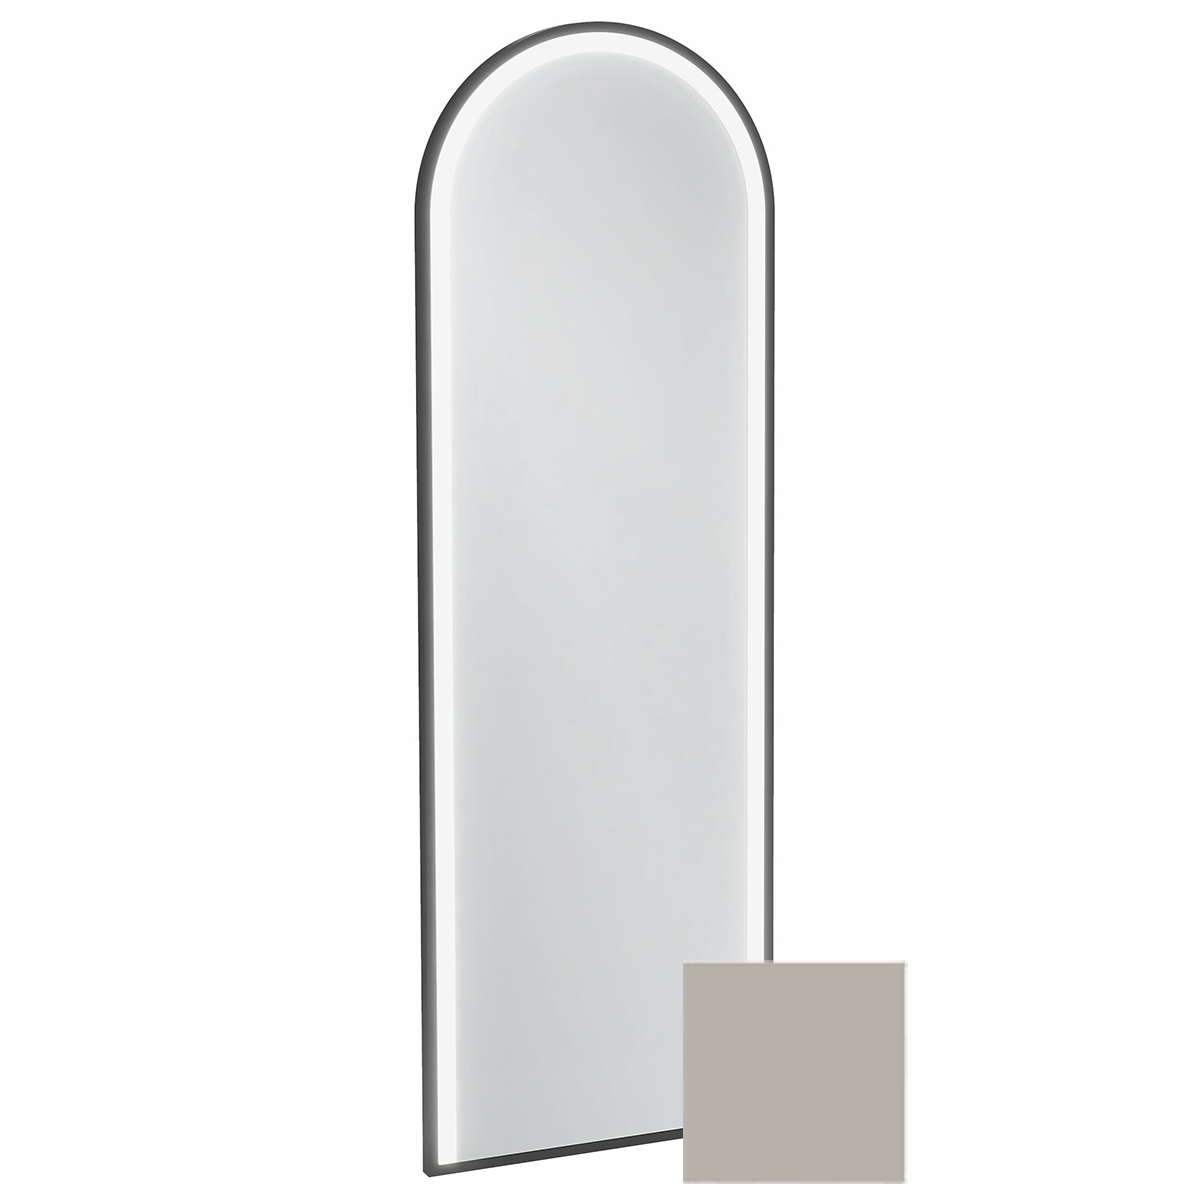 Зеркало арочное Jacob Delafon Allure EB1464-S21 с подсветкой, лакированная рама сатин серый титан